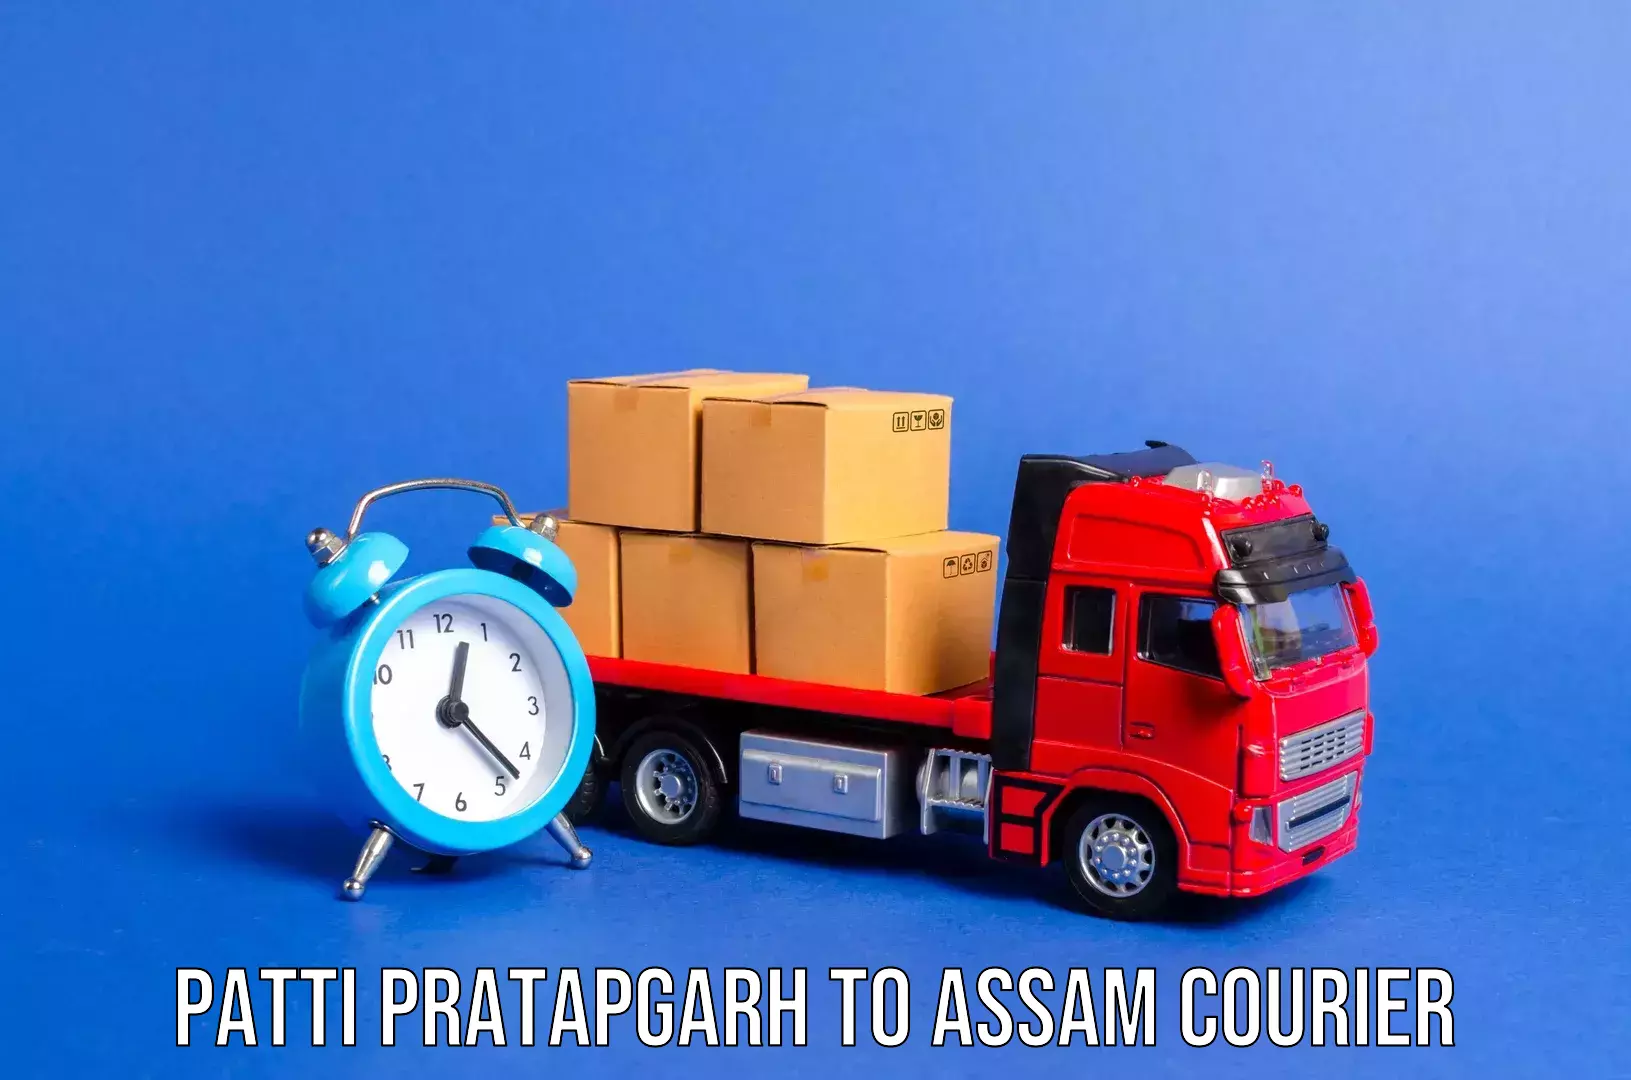 Urgent luggage shipment Patti Pratapgarh to Hailakandi